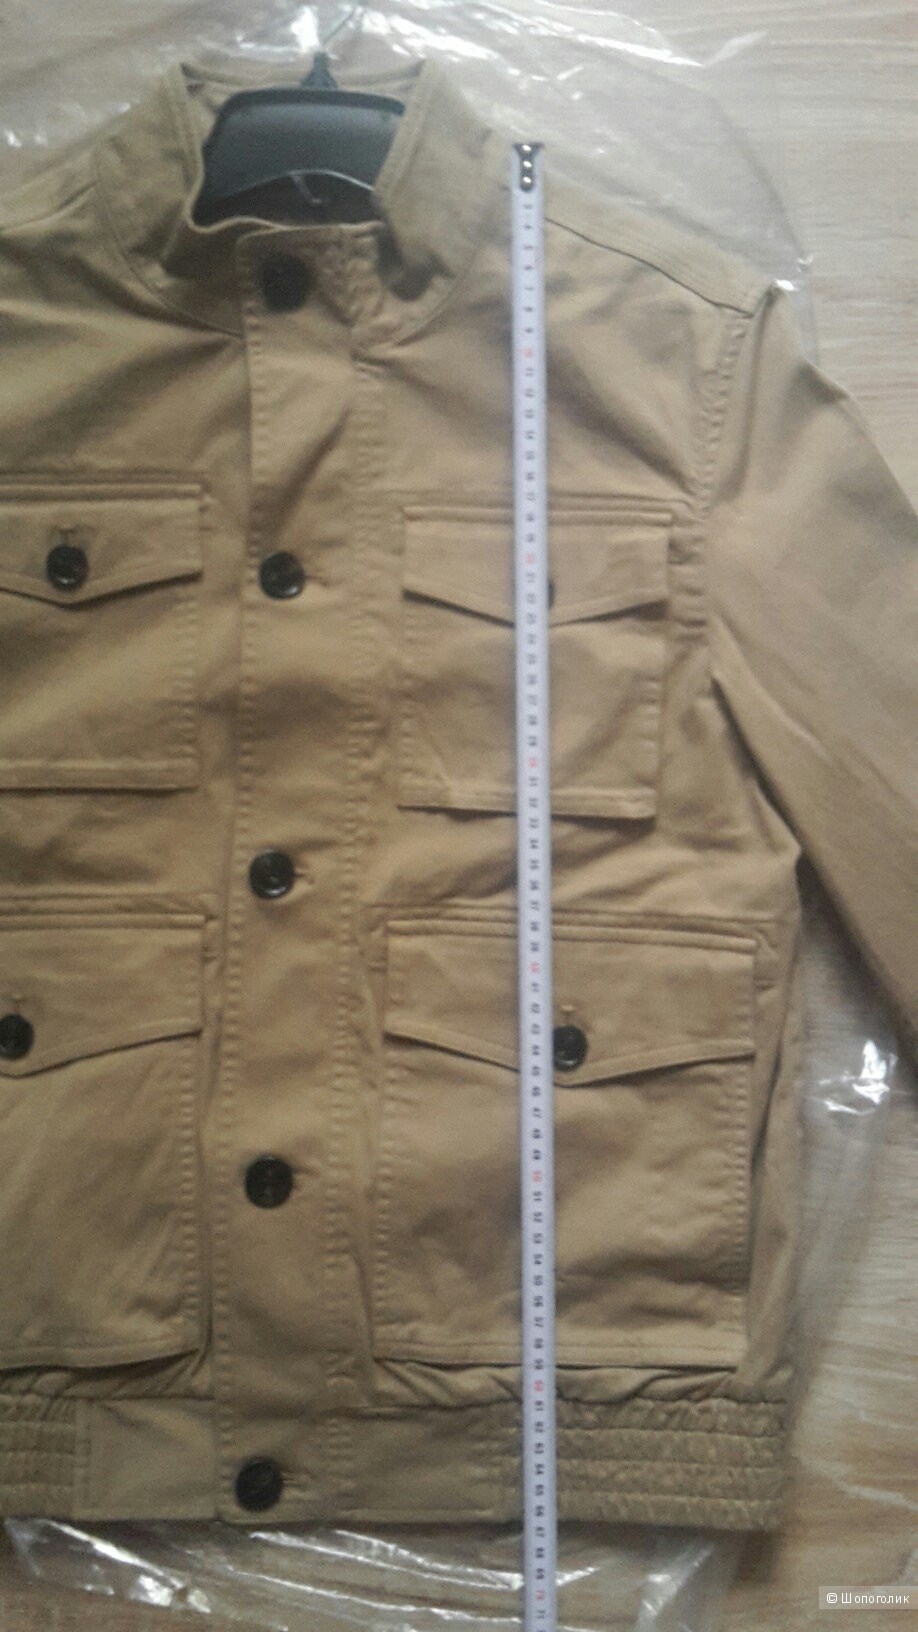 Новая мужская куртка MICHAEL KORS, размер М (48-50)